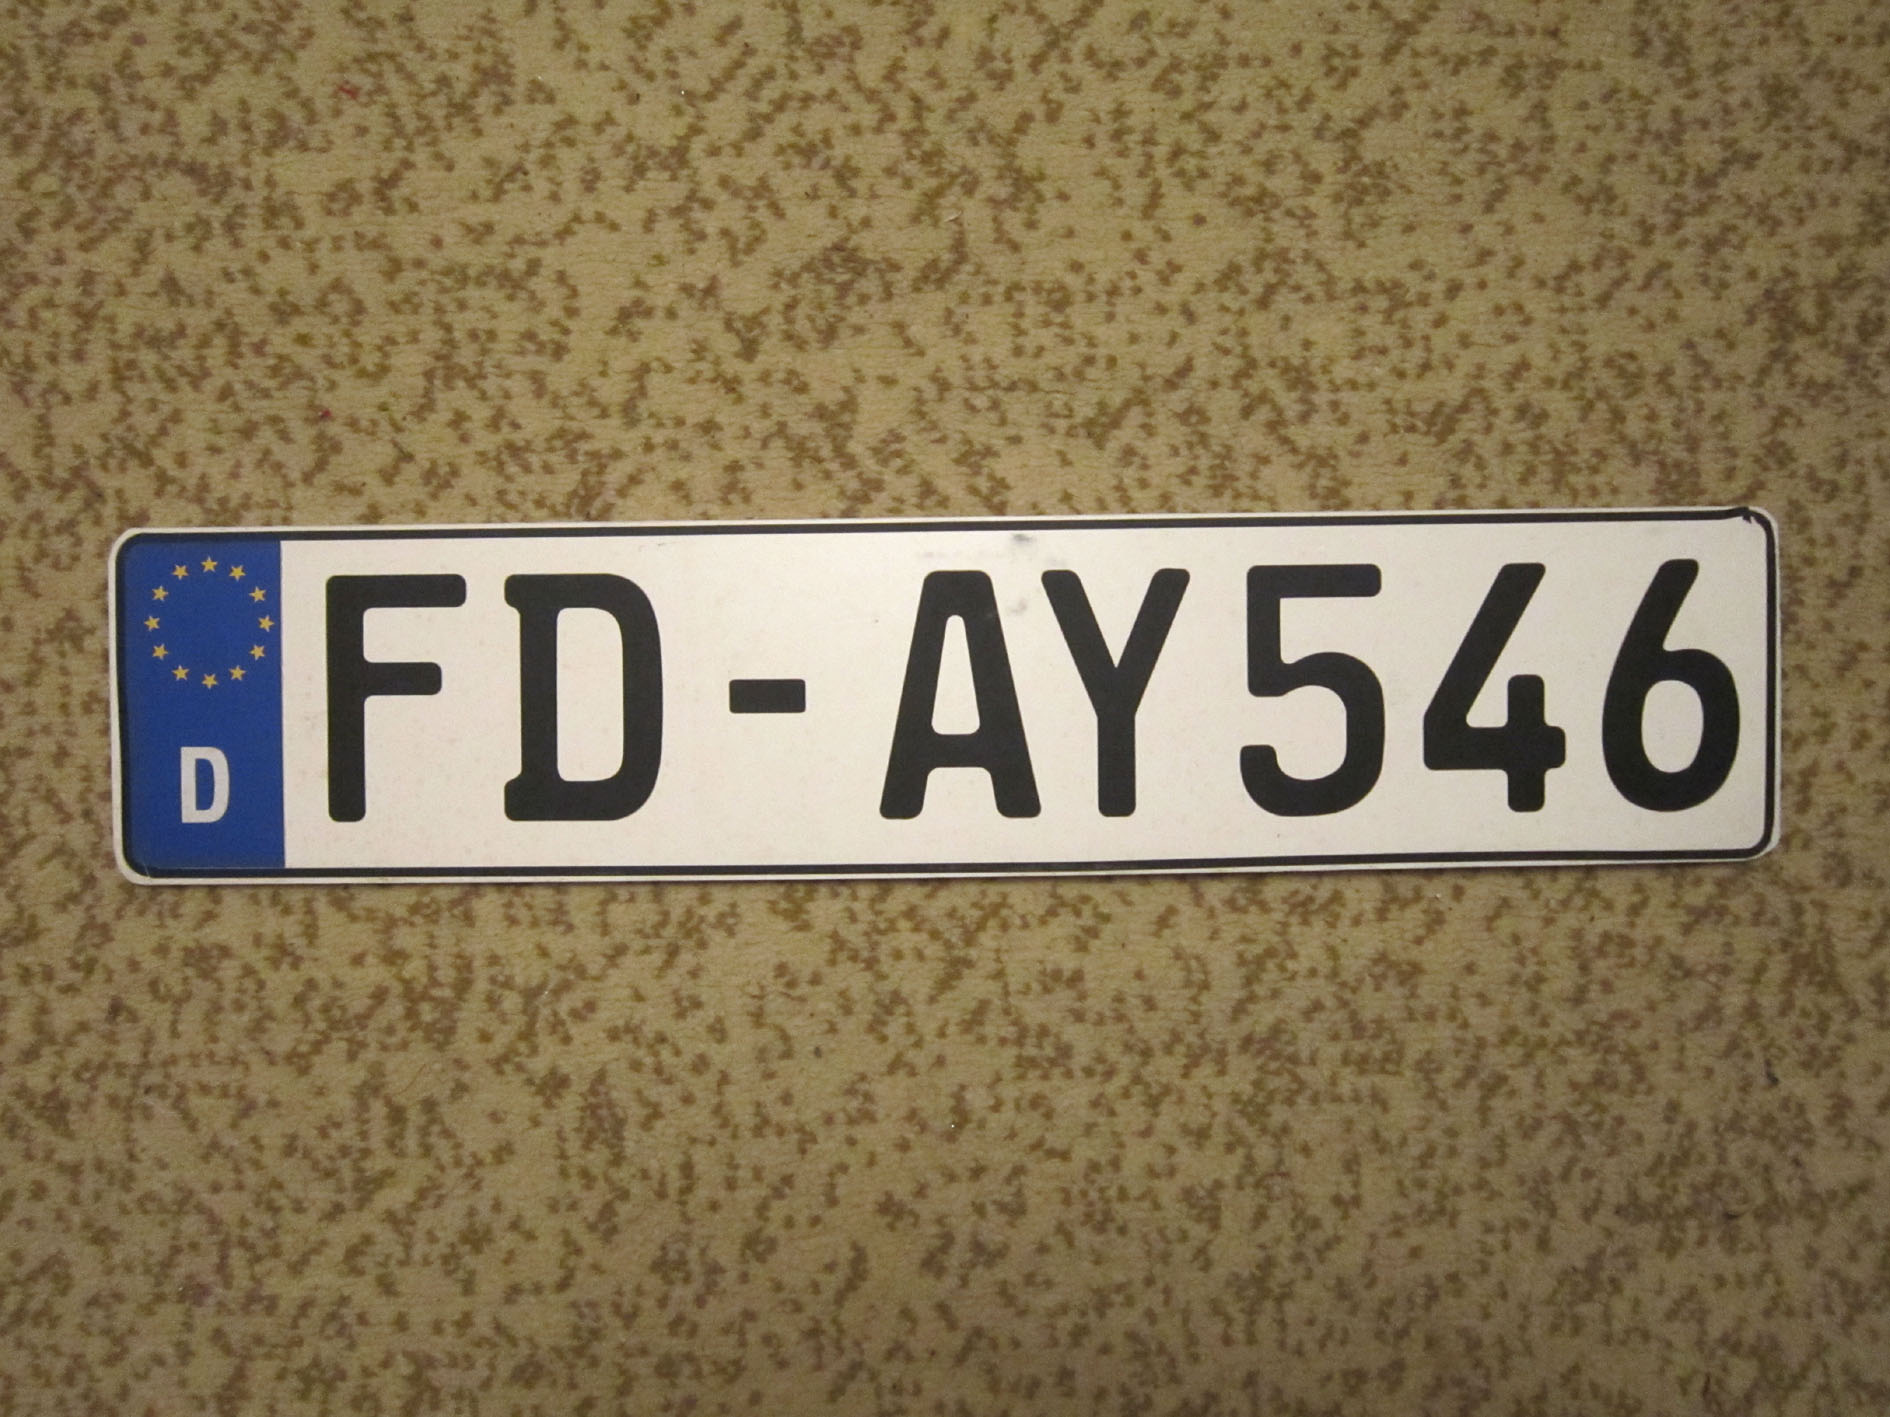 Какие номера в германии. Номерные знаки Германии. Немецкие номера авто. Автомобильный номерной знак. Номерной знак автомобиля Германии.